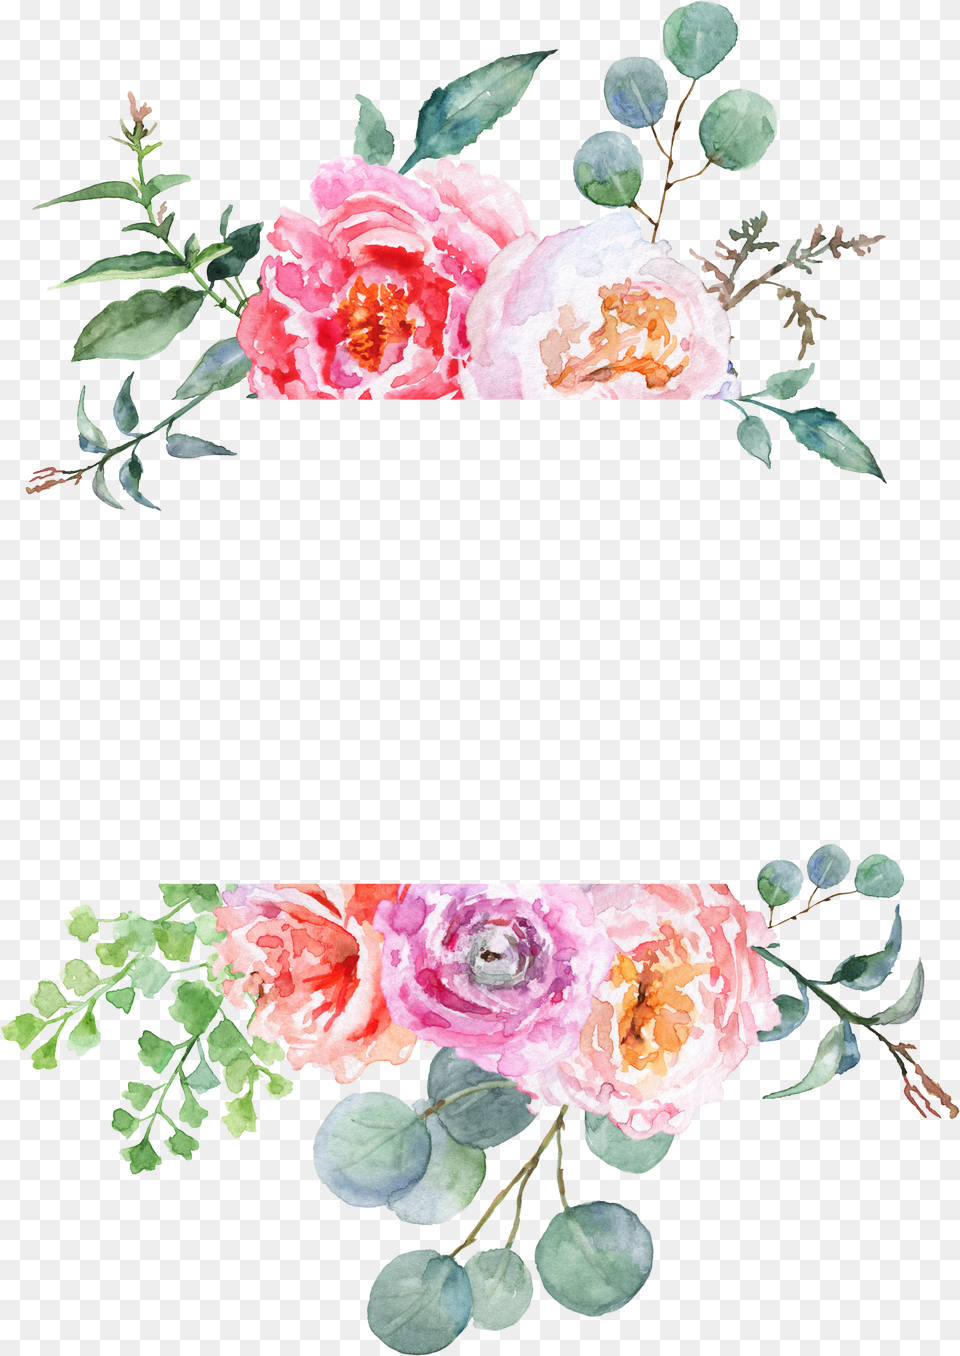 Instagram Flower Border, Plant, Rose, Petal, Art Png Image